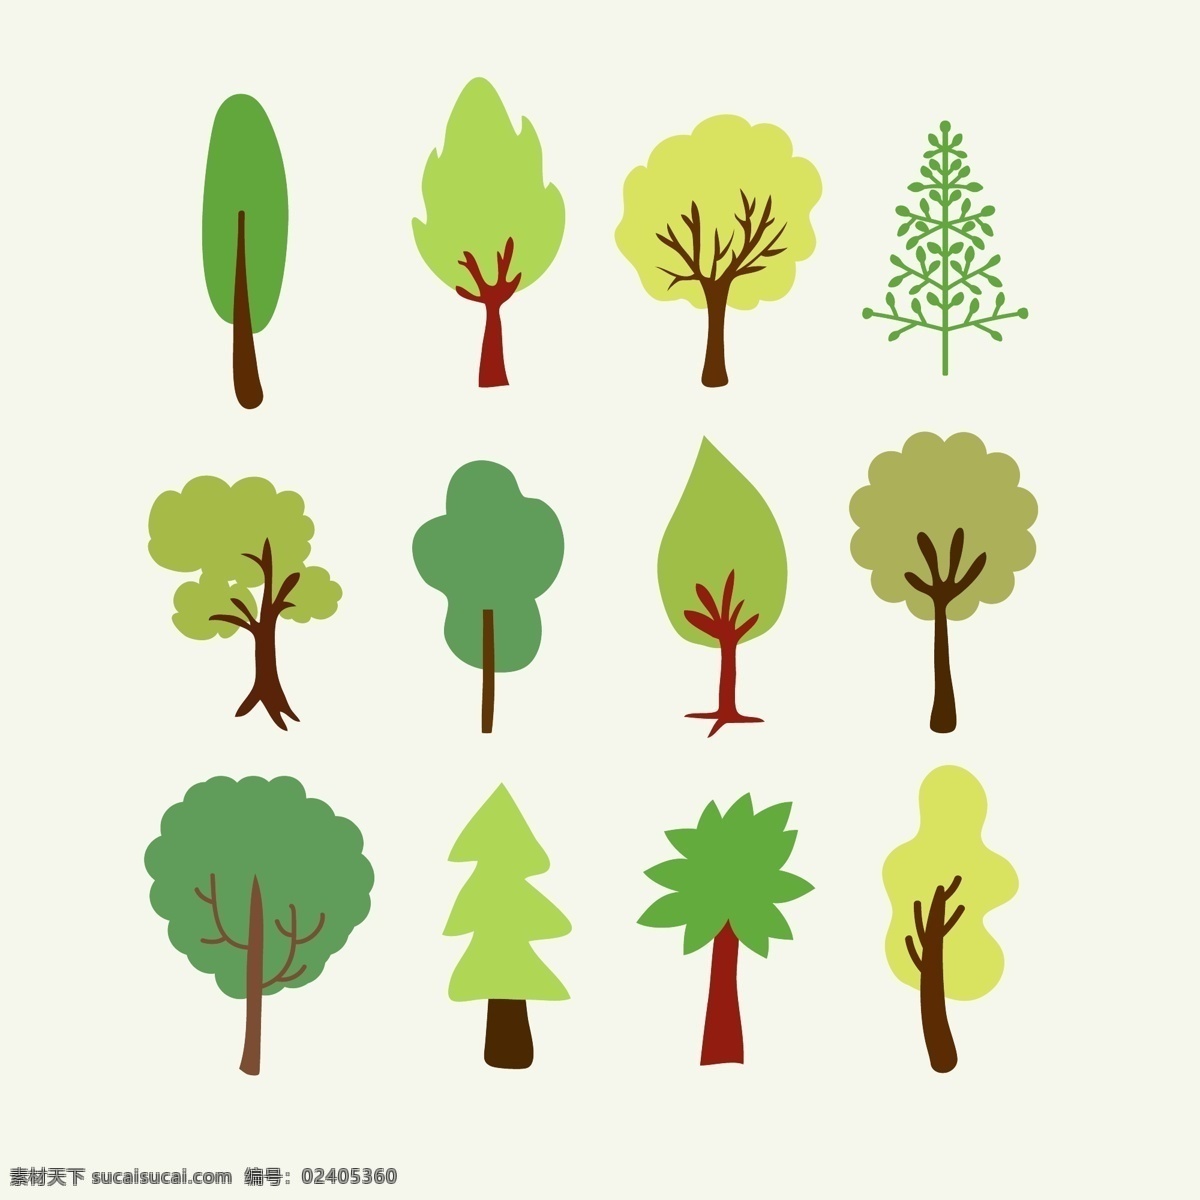 森林树木图形 森林 树木 向量 集合 树 自然 绿色 地势平坦 林木 元素 图形 符号 设置 收藏 最新矢量素材 白色